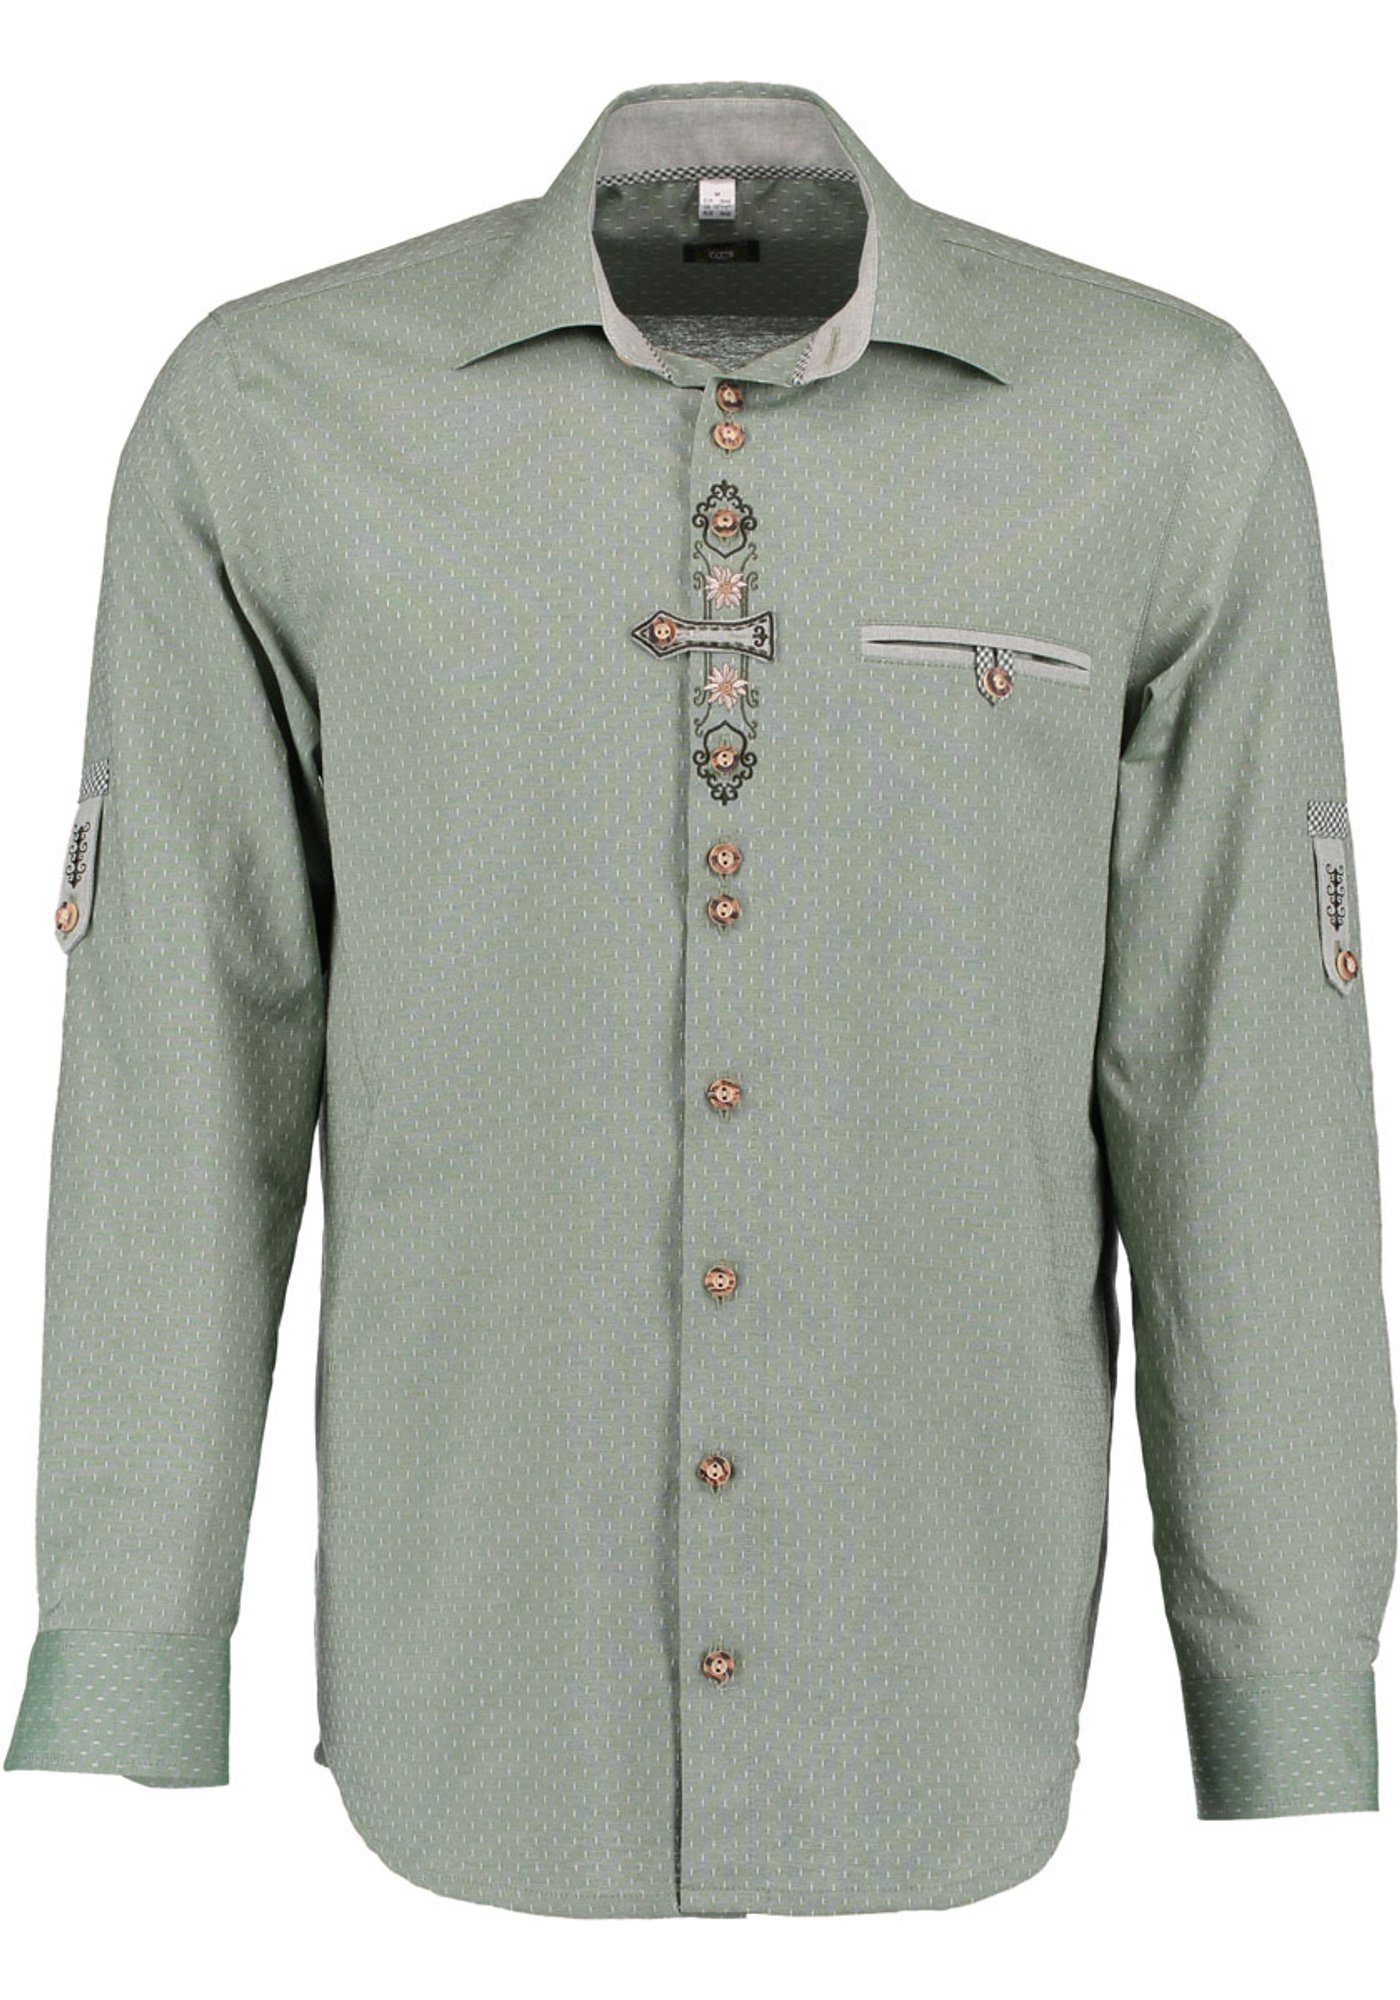 OS-Trachten Trachtenhemd Olore Langarmhemd mit Edelweiß-Stickerei auf der Knopfleiste khaki/schlamm